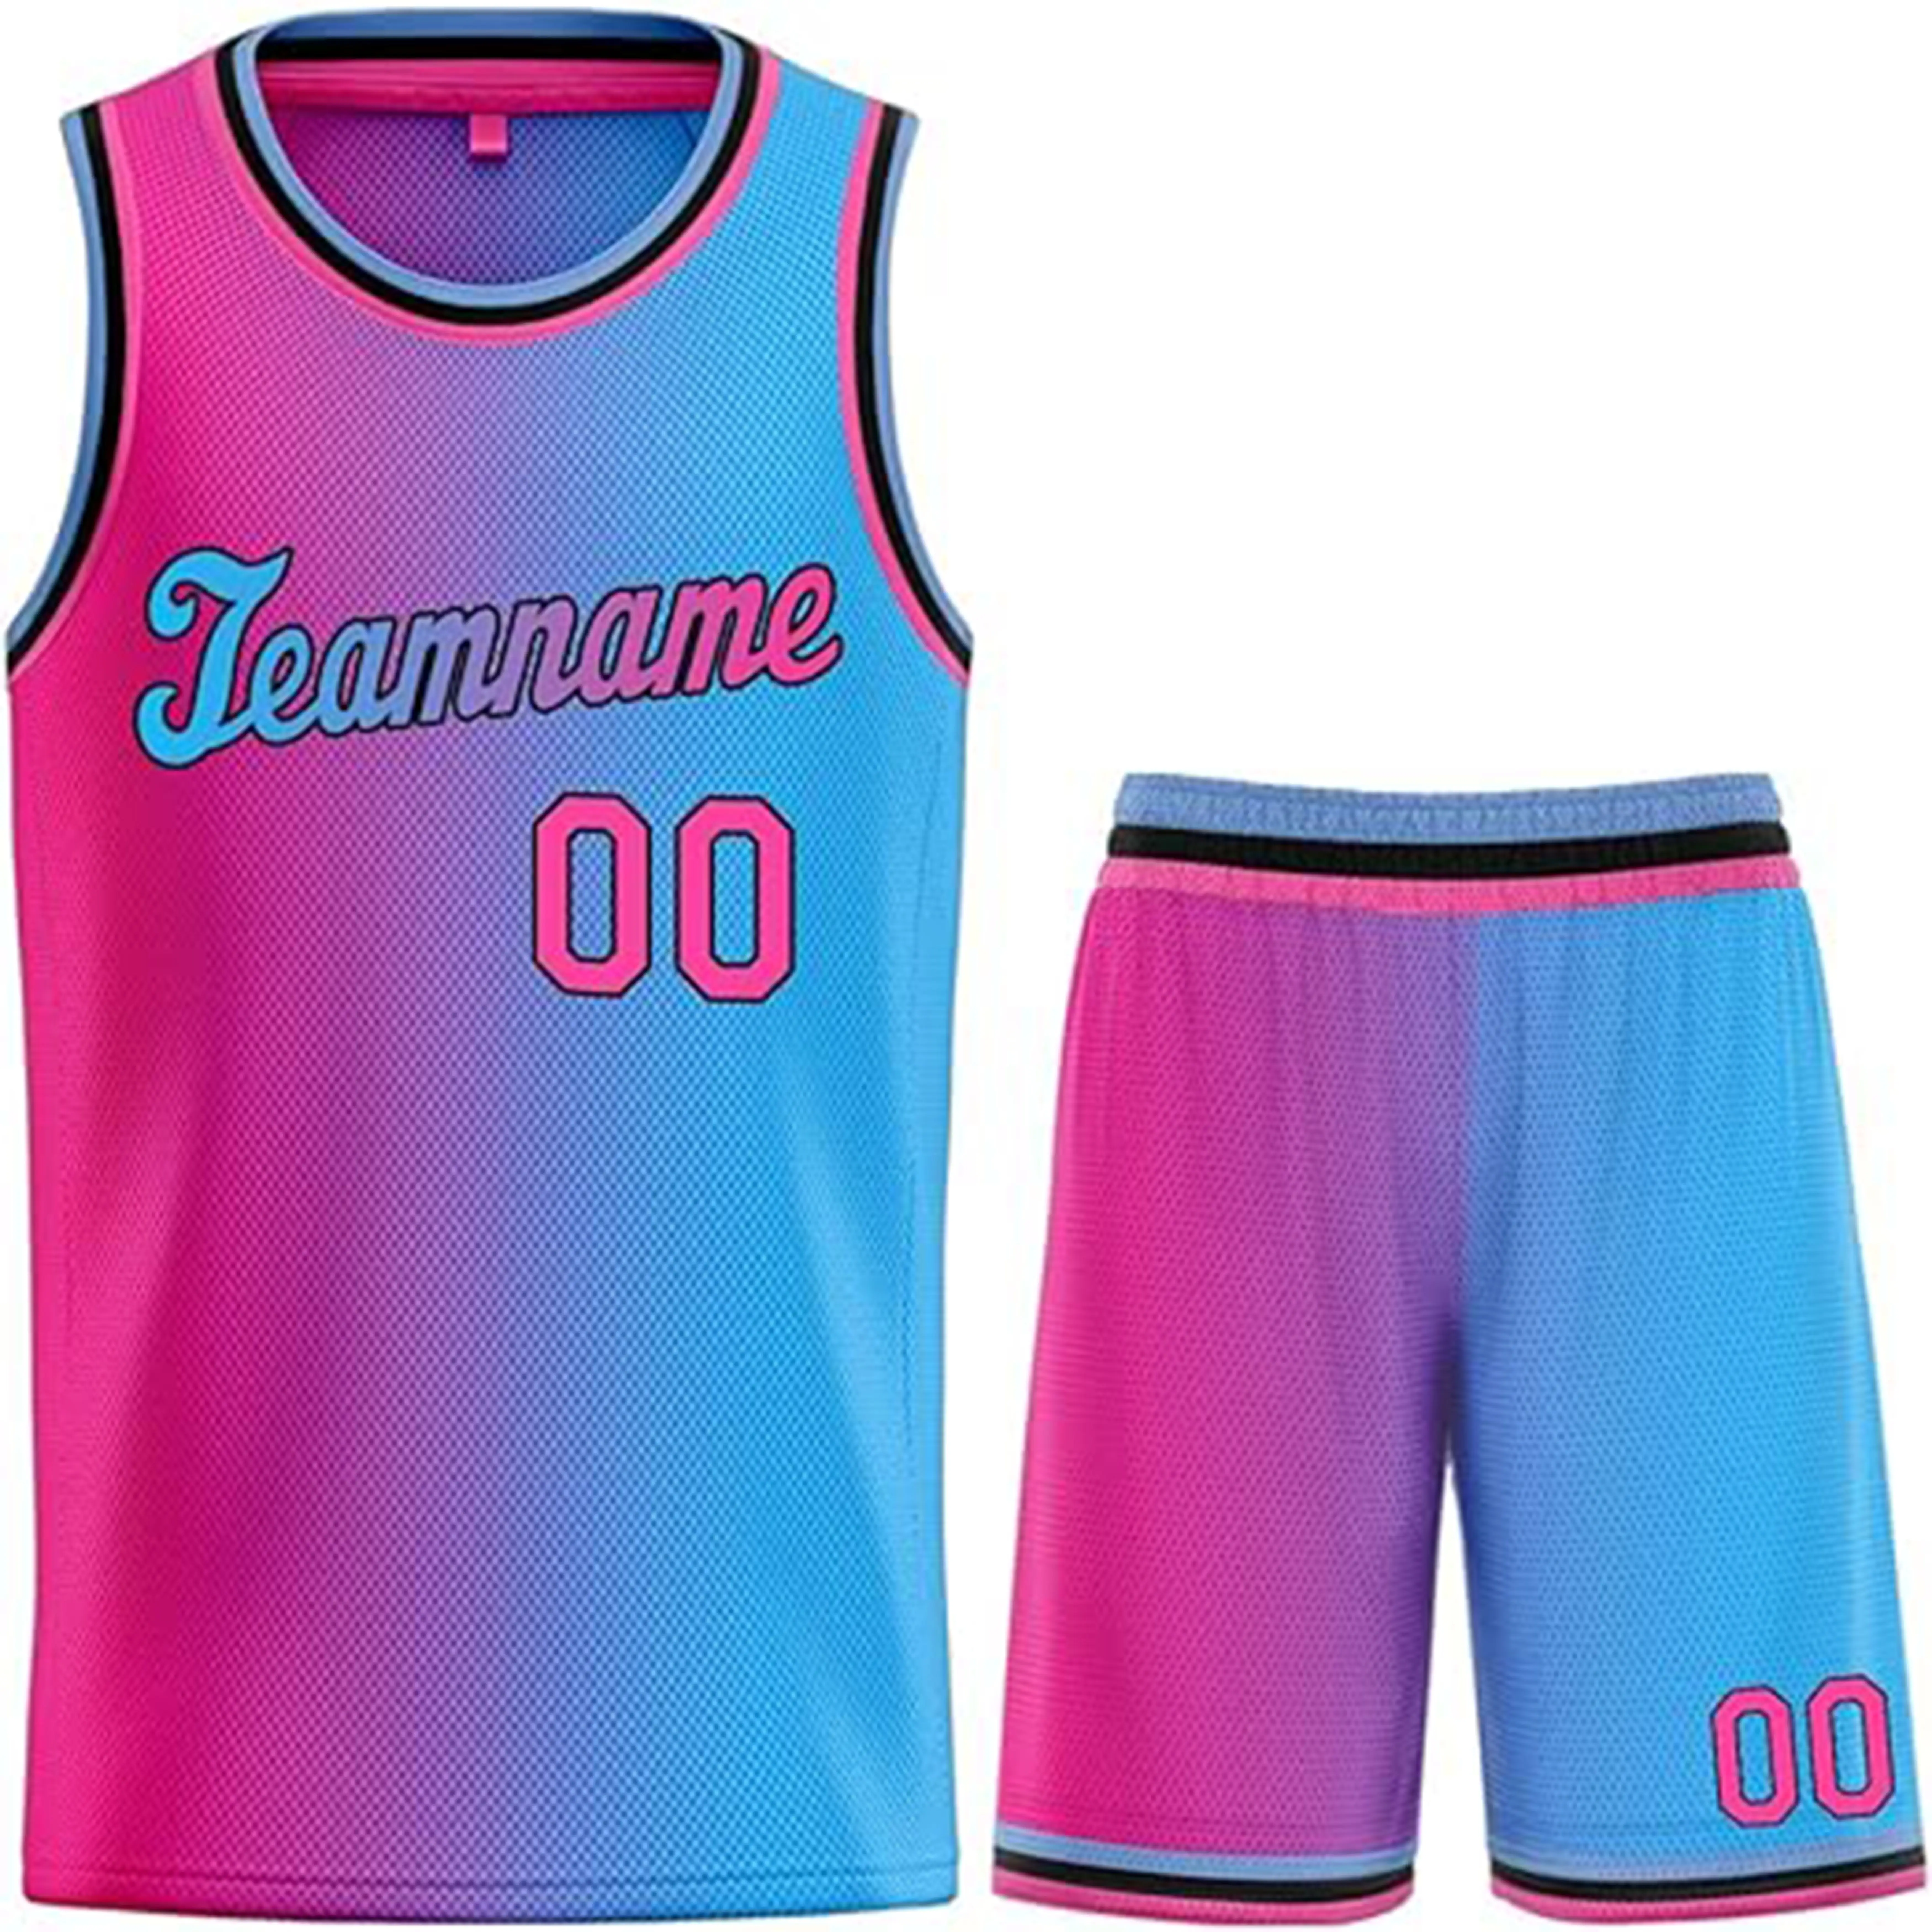 Stampa design personalizzato pantaloncini da basket set uniforme da uomo e donna allenamento stampa a sublimazione maglie da basket